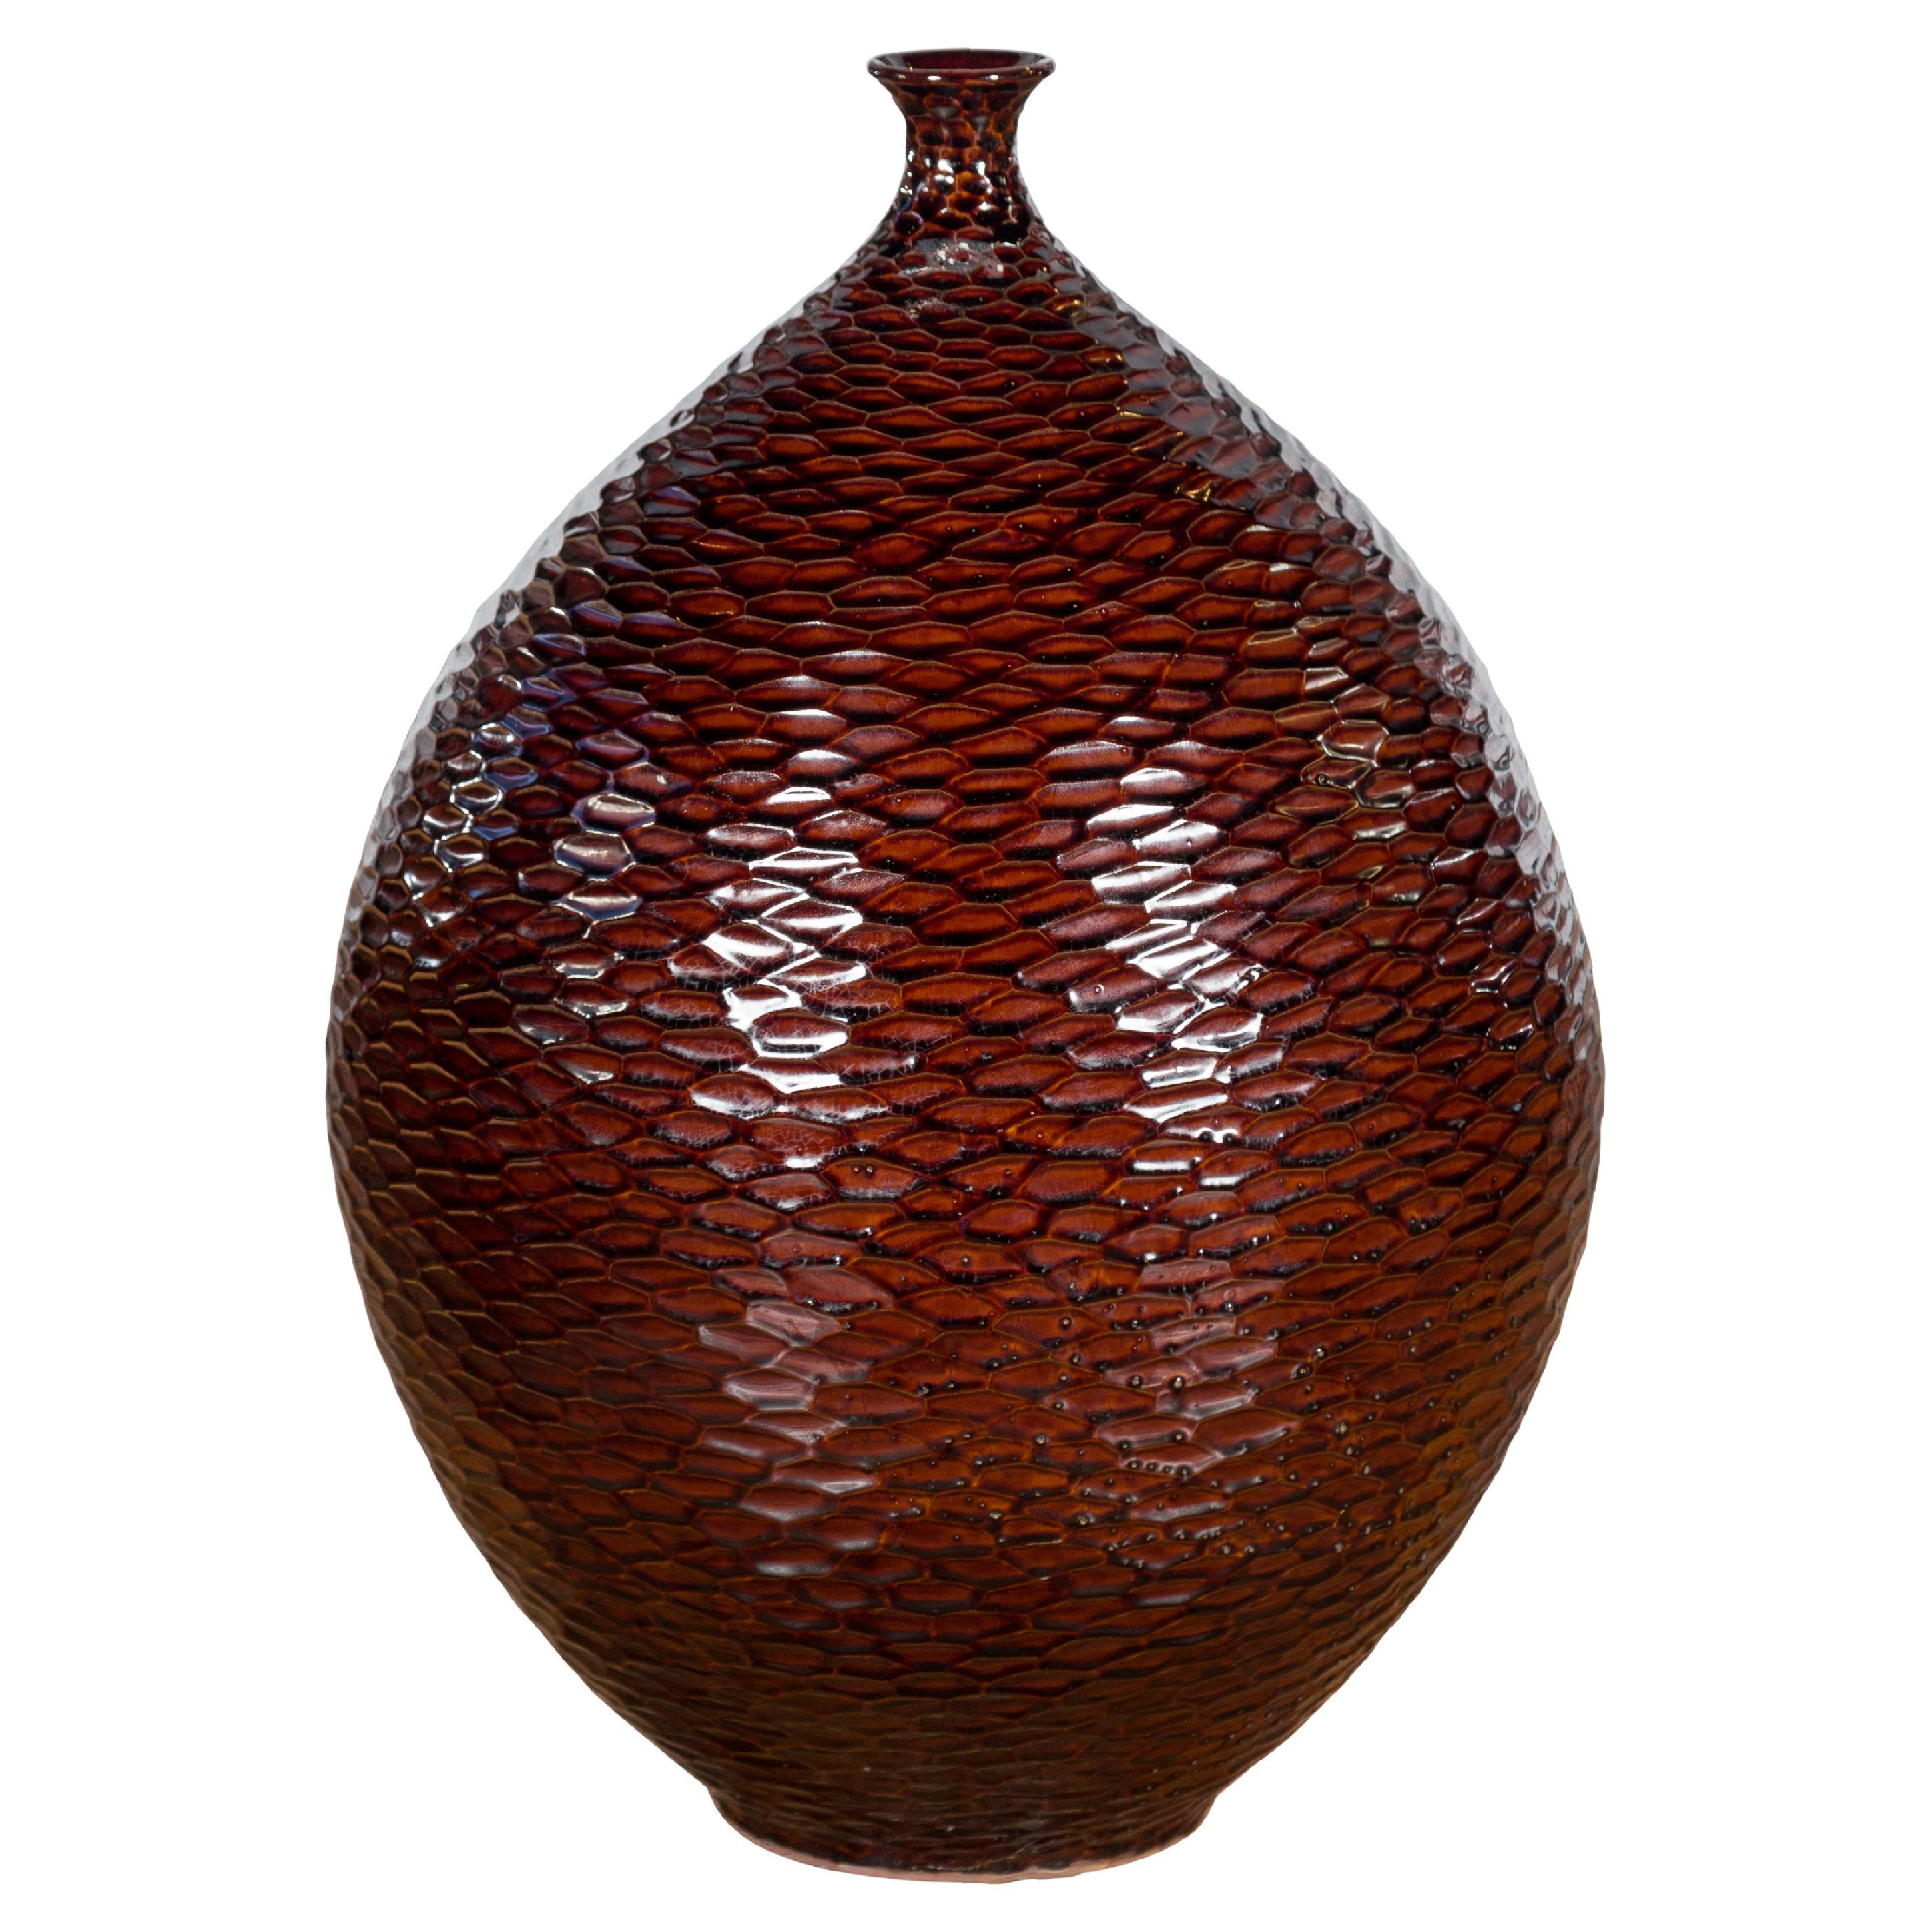 Handgefertigte burgunderrote Vase der Kollektion Prem mit strukturierten honigfarbenen Motiven